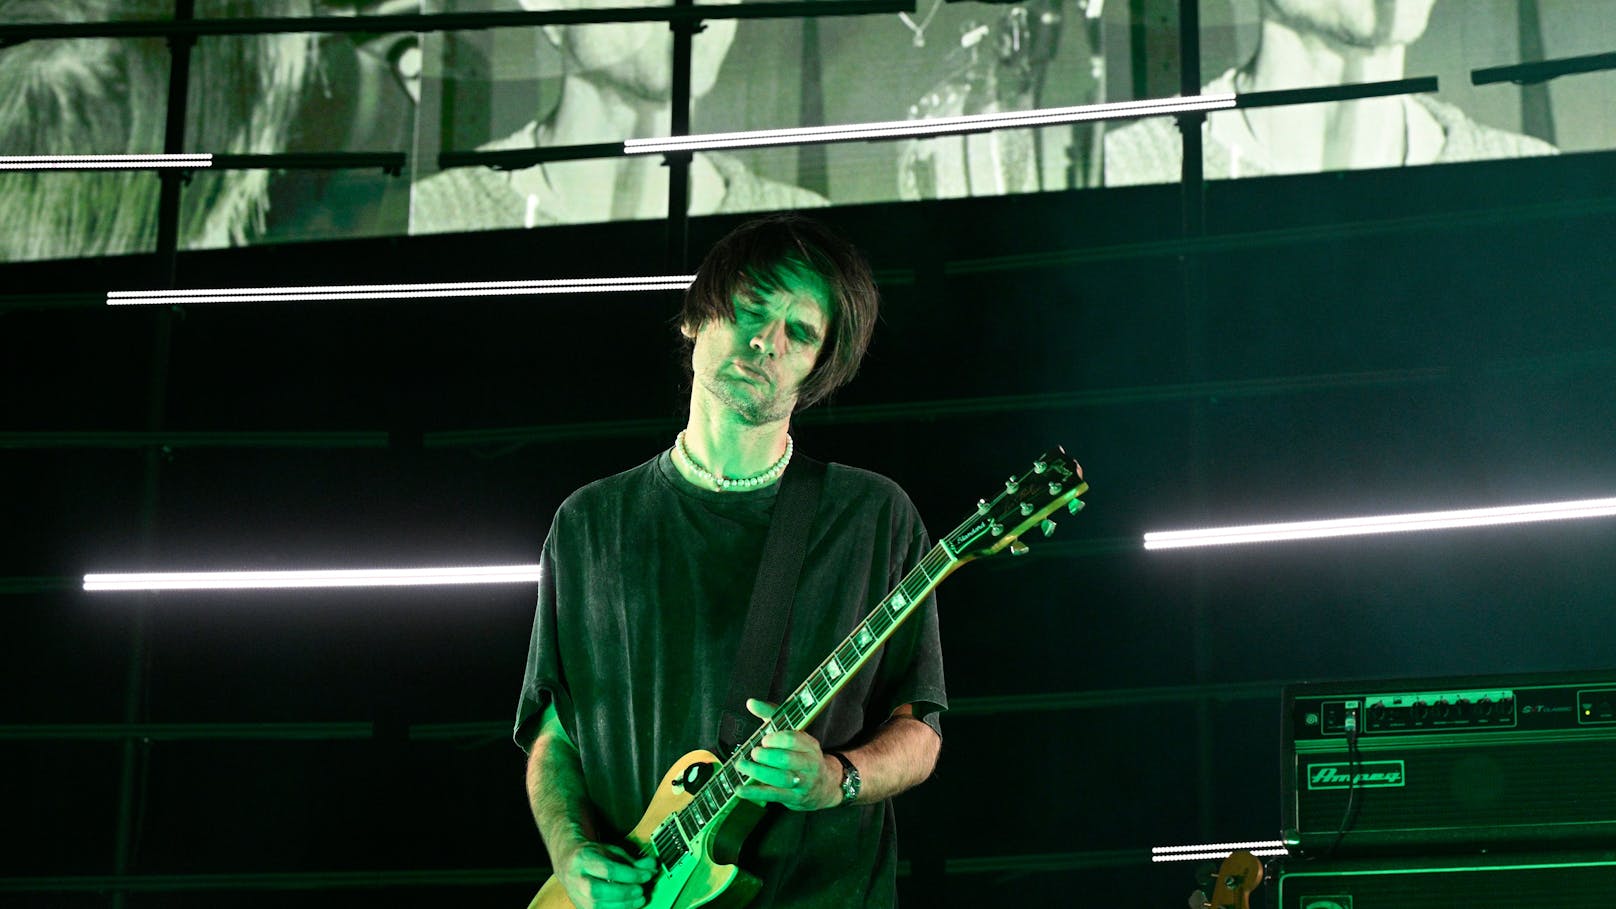 Tour abgesagt! Radiohead-Gitarrist schwer erkrankt